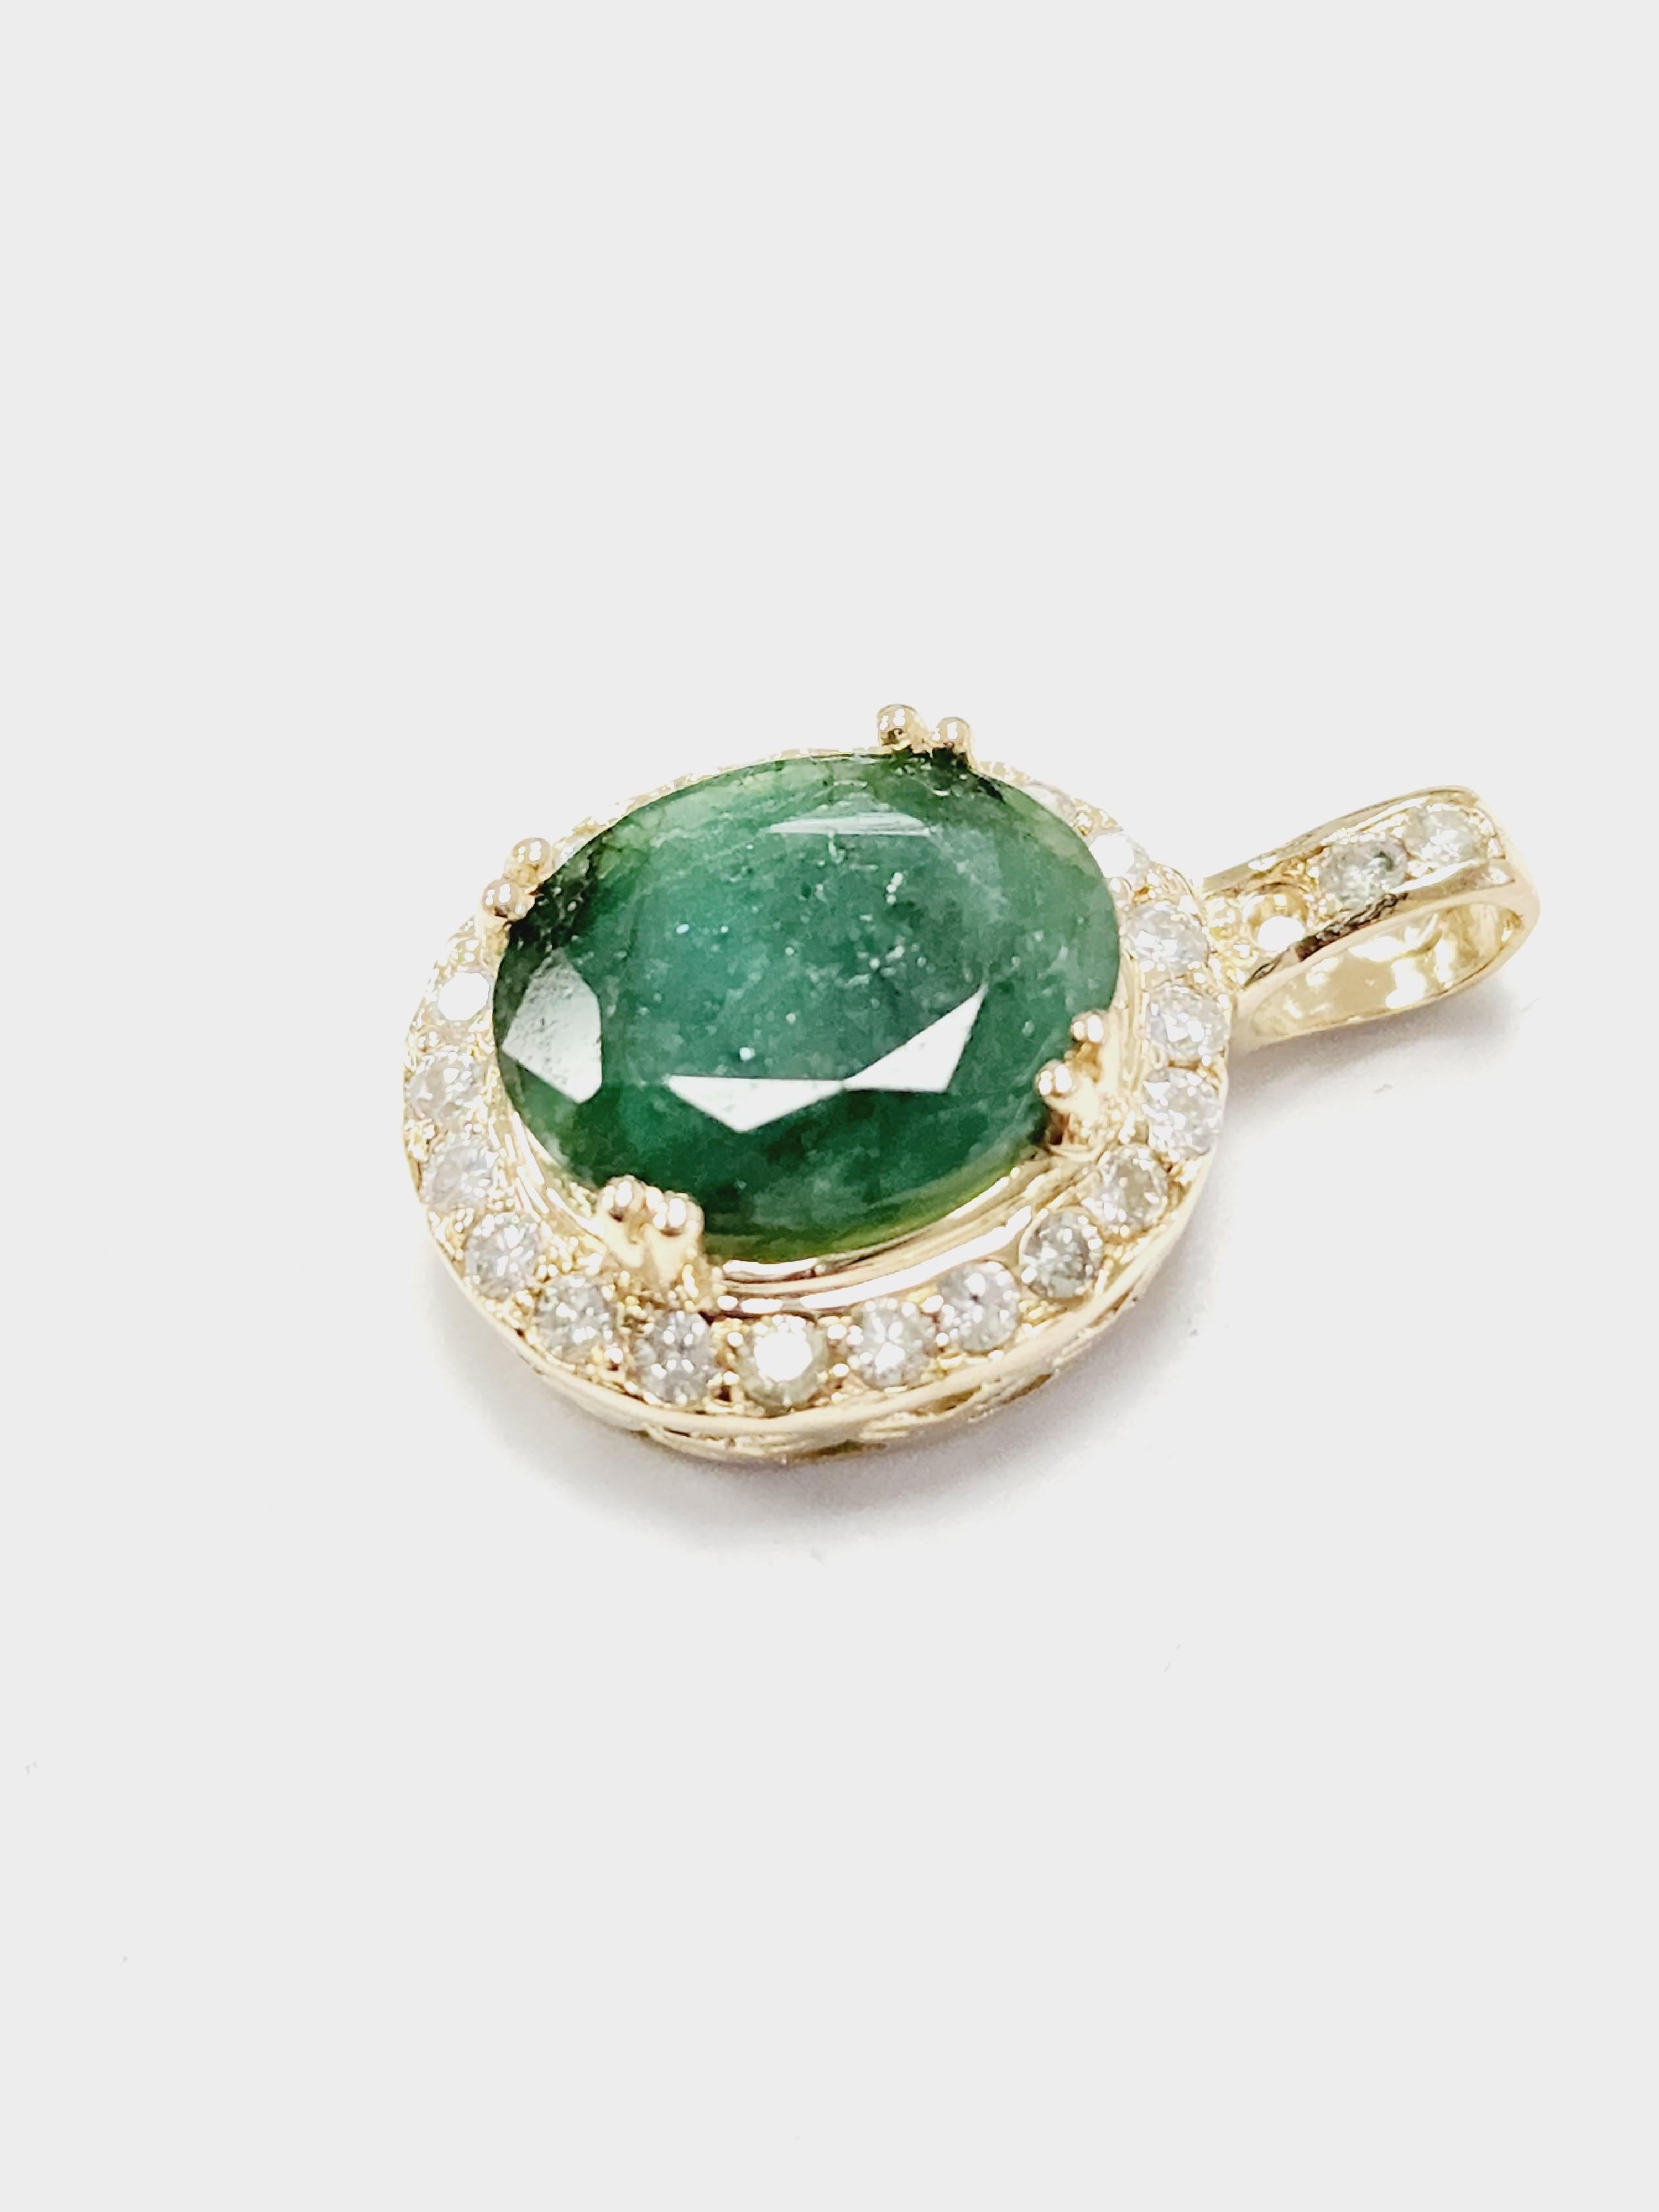 Emerald Cut 3.55 Carats Natural Emerald Diamond Pendant Yellow Gold 14 Karat For Sale